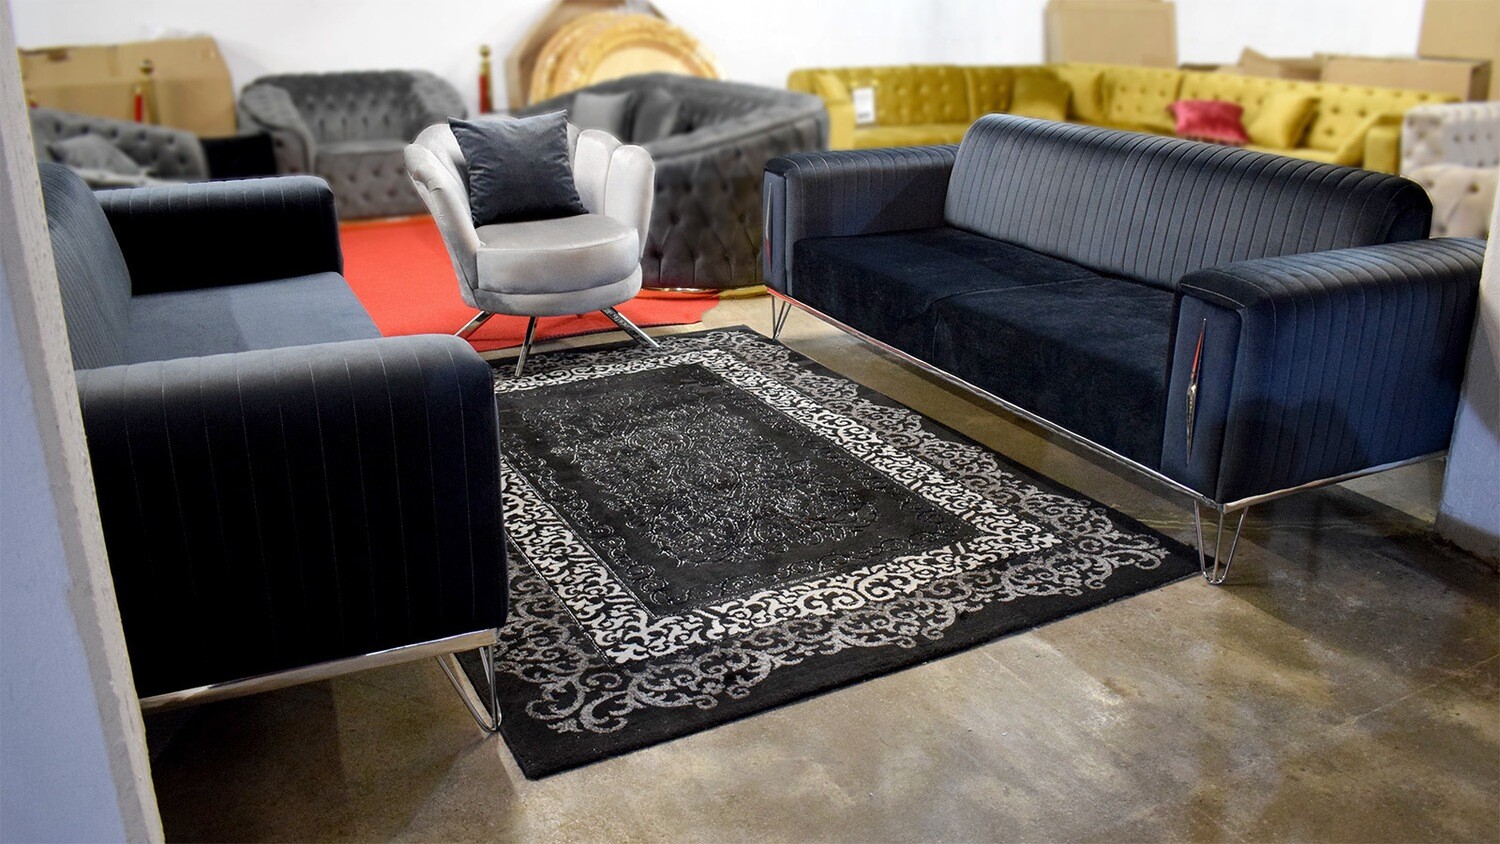 Design 3-3-1 "Berlin" Schlaf-Sofa Blau-Grau Sessel Couch